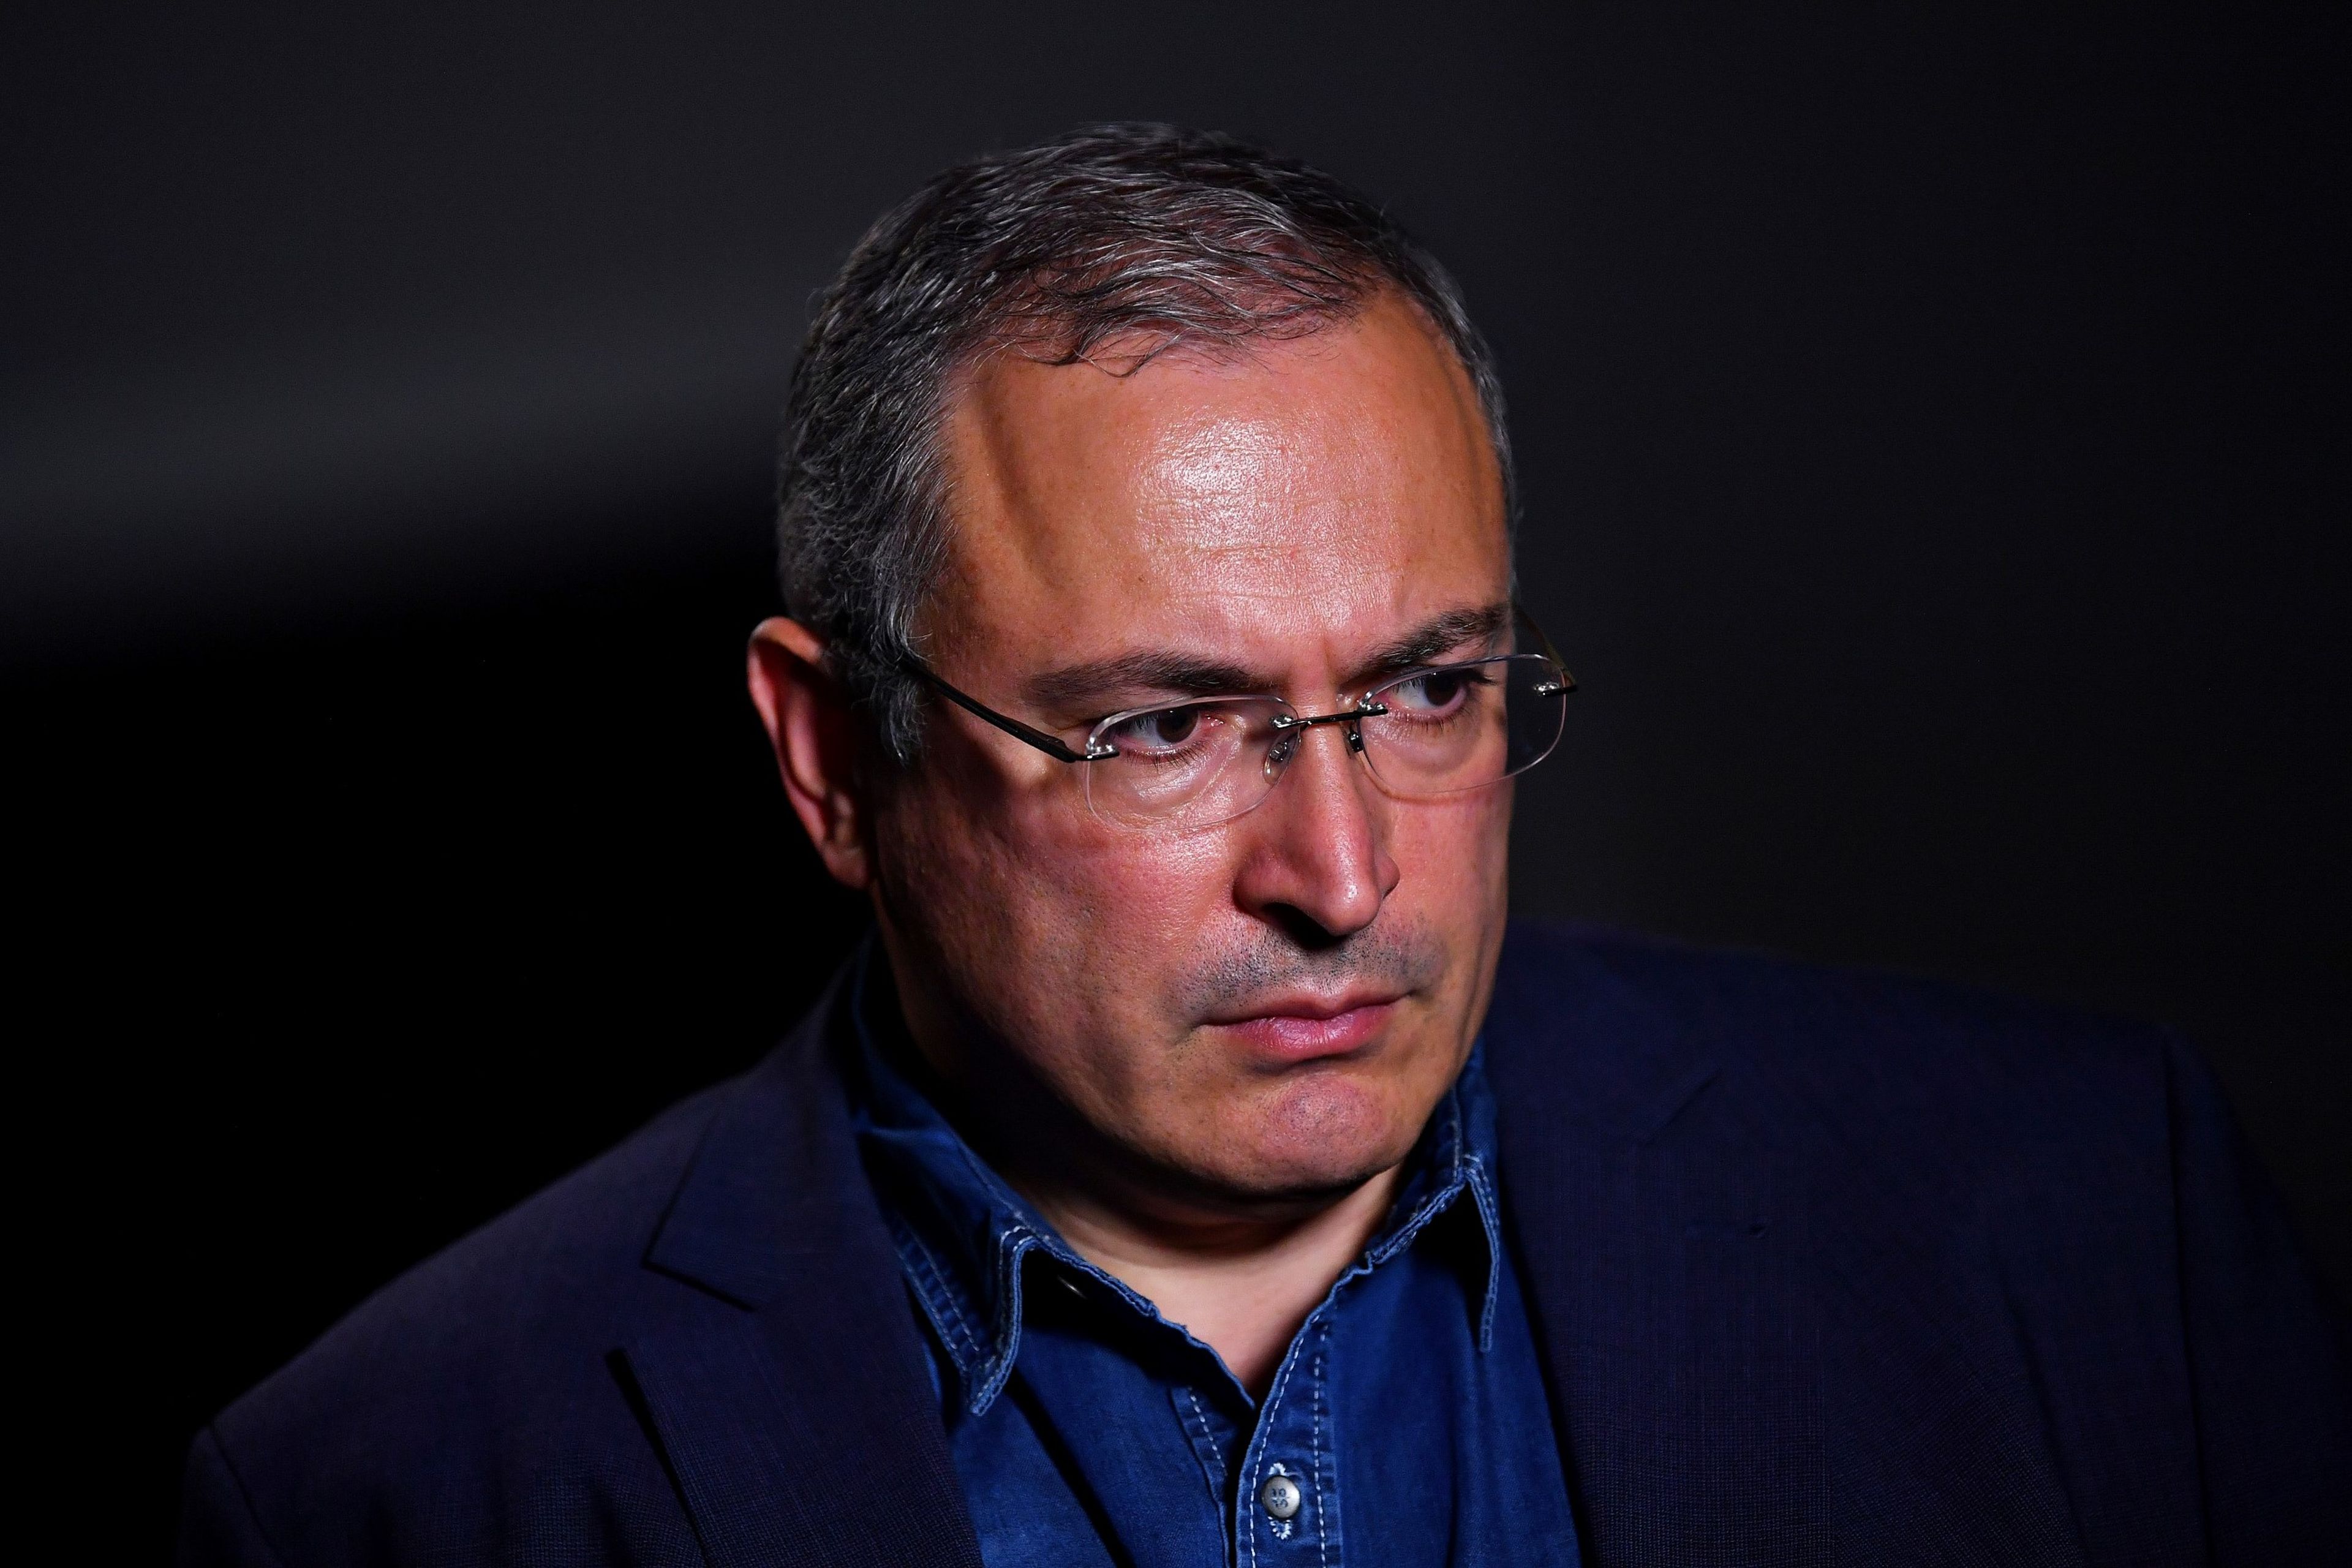 Mijaíl Jodorkovski, antiguo propietario de una de las mayores compañías petroleras de Rusia, despertó la ira de Putin en 2003 y fue encarcelado durante 11 años.